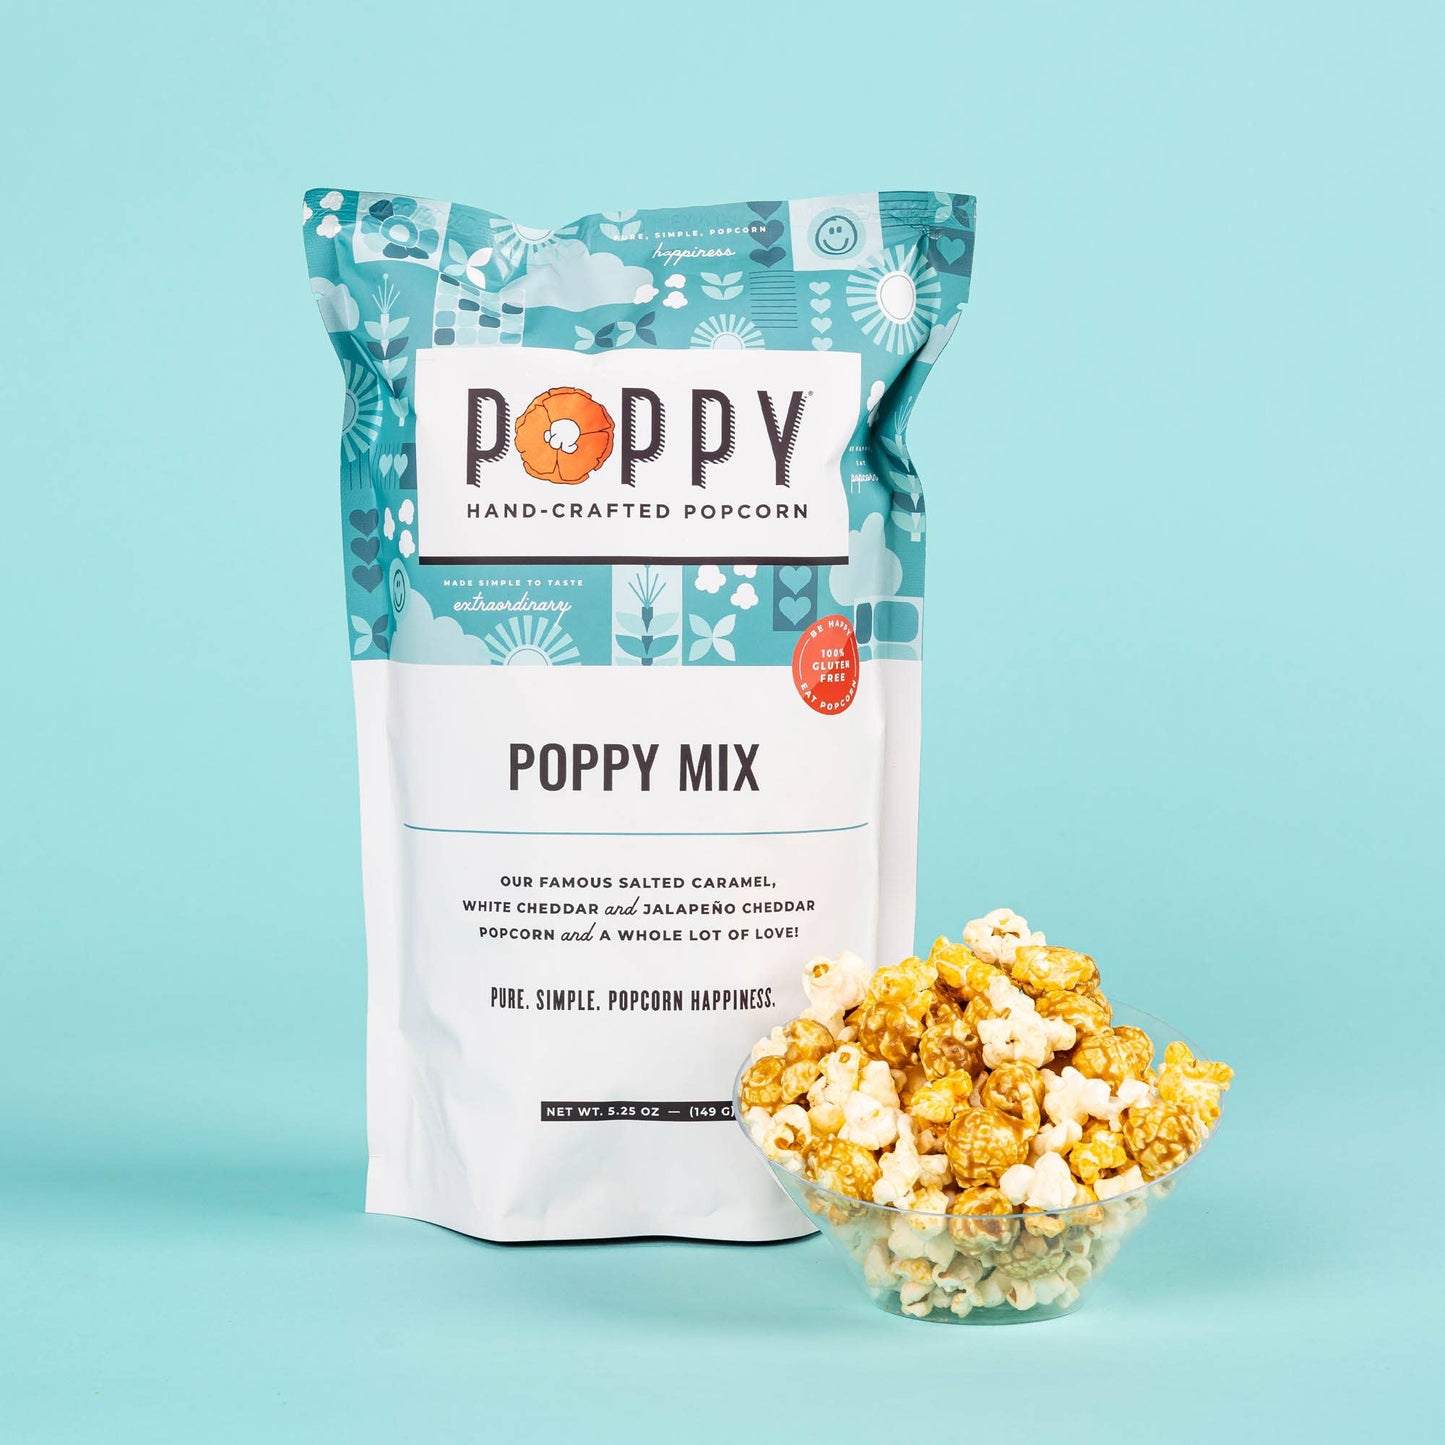 Poppy Hand-Crafted Popcorn - Poppy Mix Popcorn